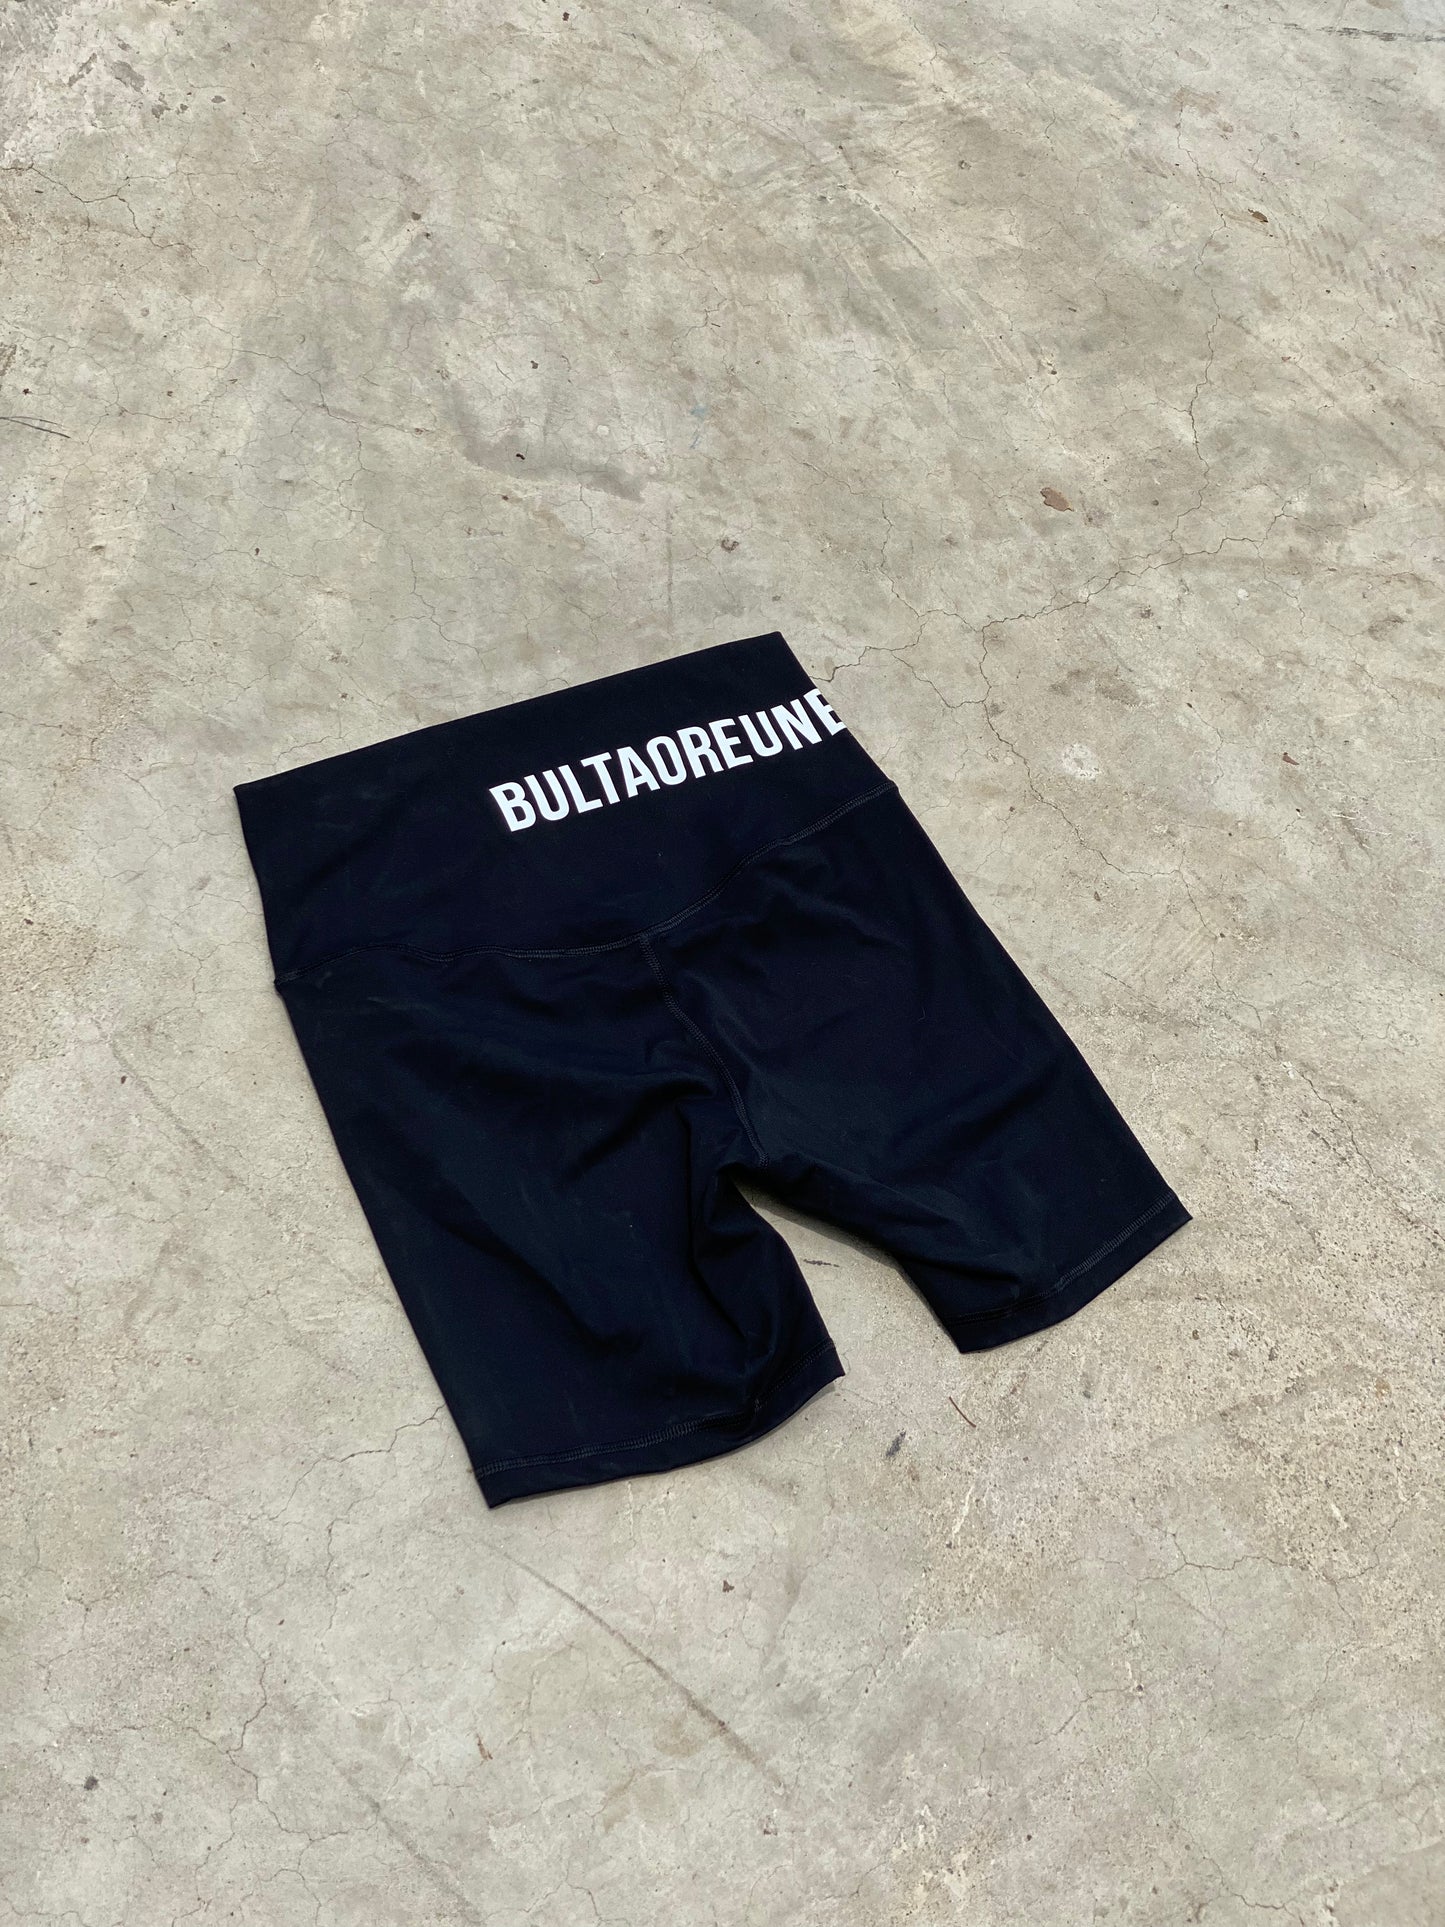 Bultaoreune Shorts